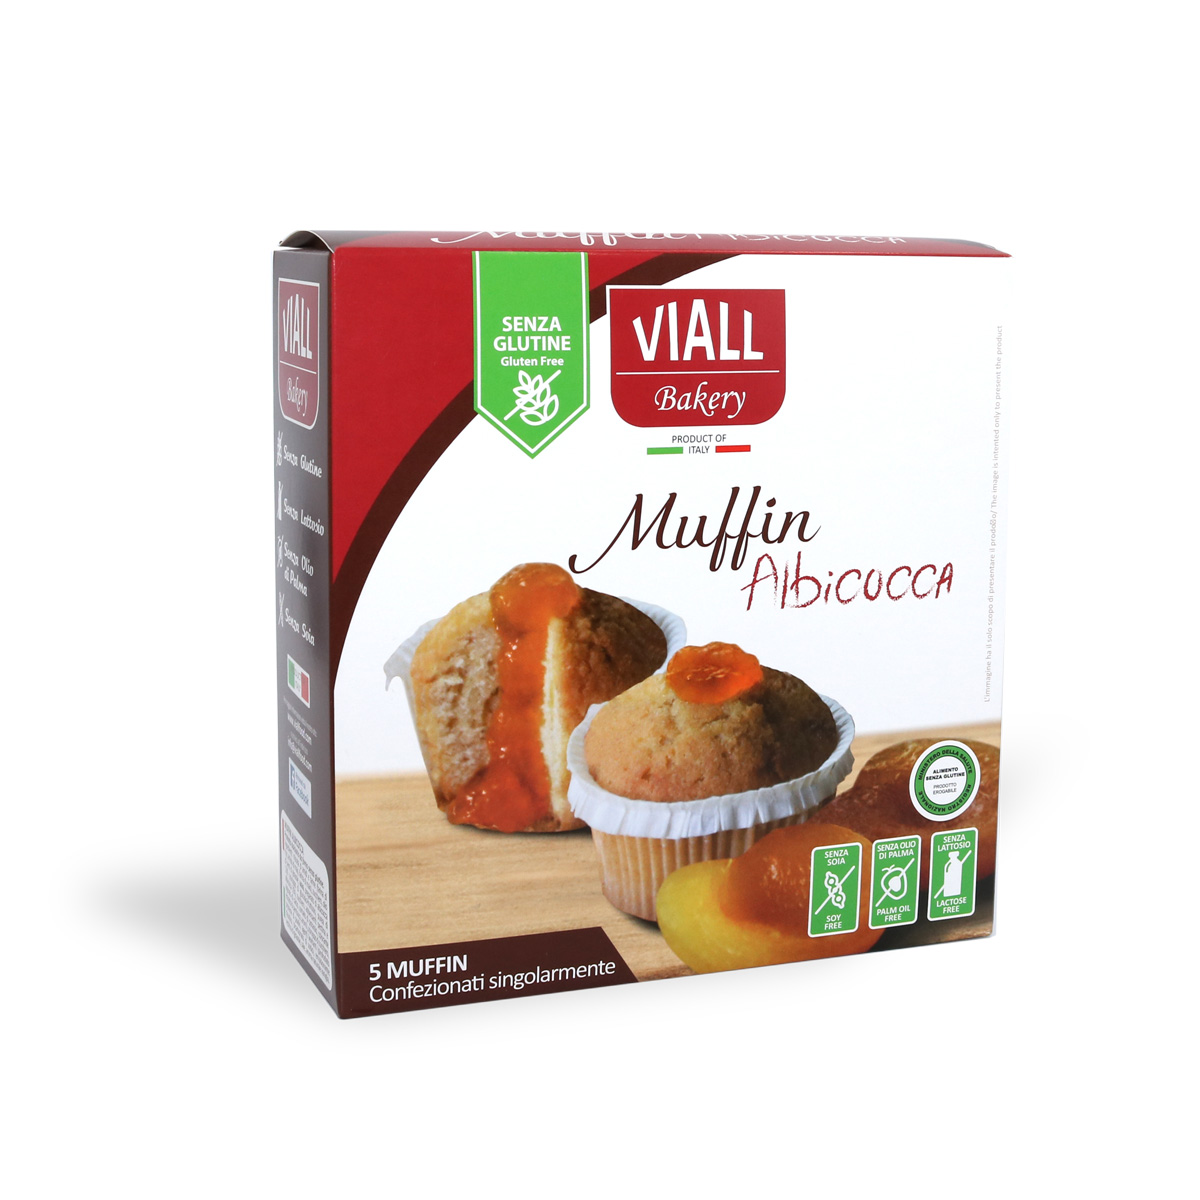 Image of Viall Muffin All'Albicocca Senza Glutine 185g 971324049